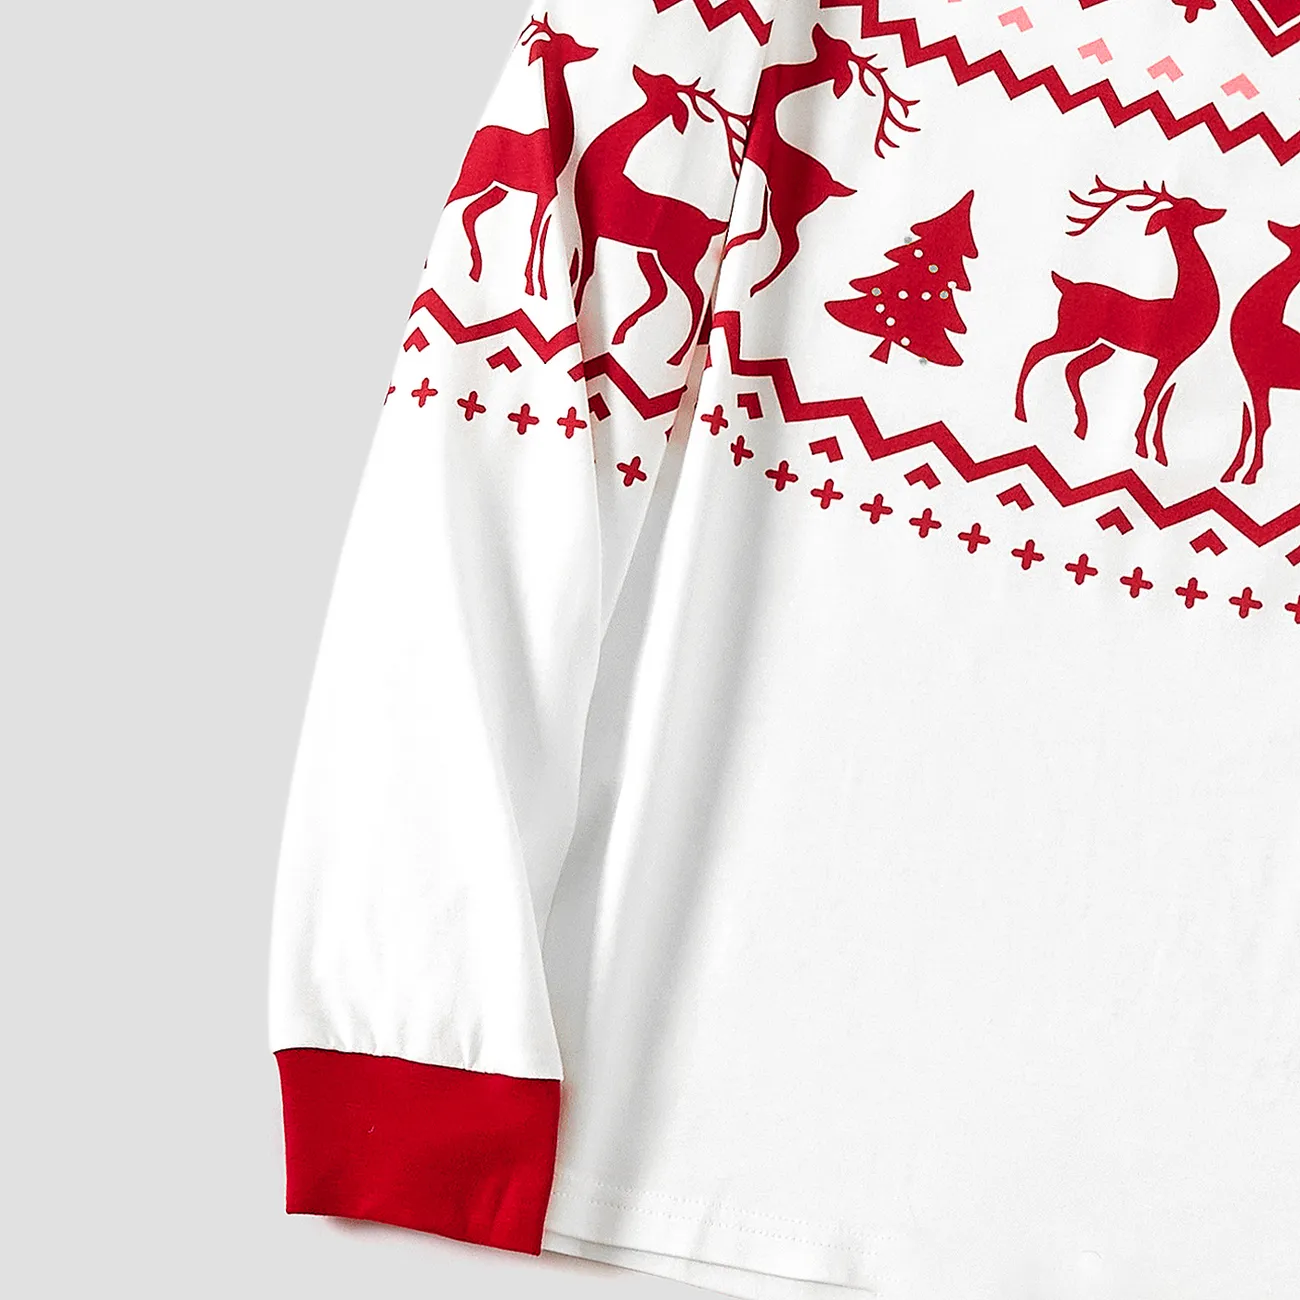 Christmas Reindeer and Snowflake Print Family Matching Pajamas Sets (Flame Resistant) Red big image 1